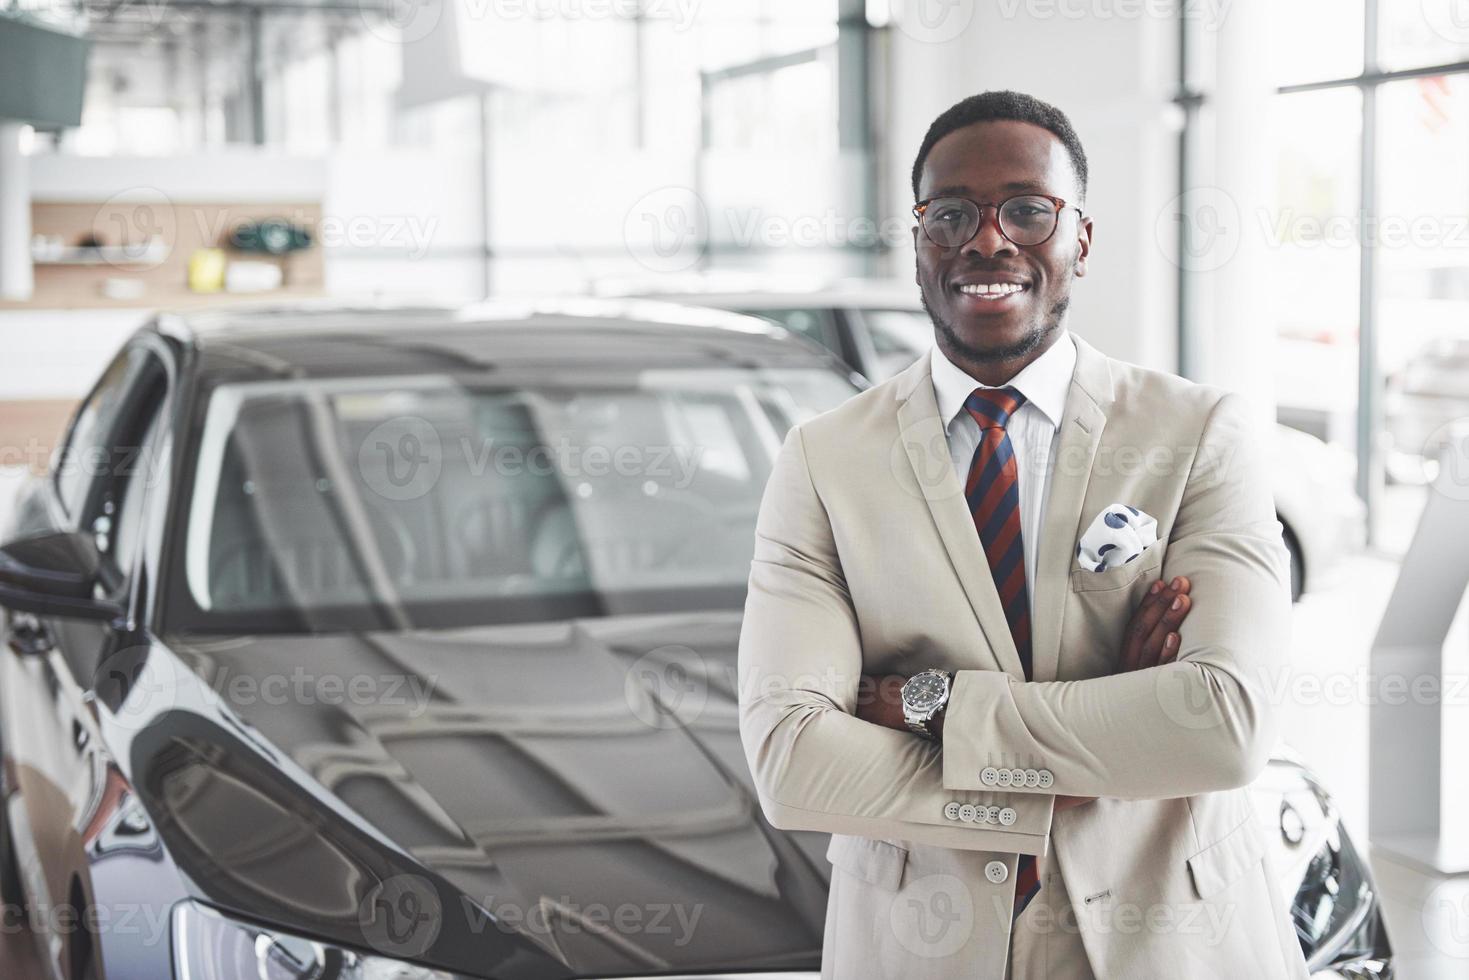 o jovem empresário negro e atraente compra um carro novo, sonhos tornam-se realidade foto